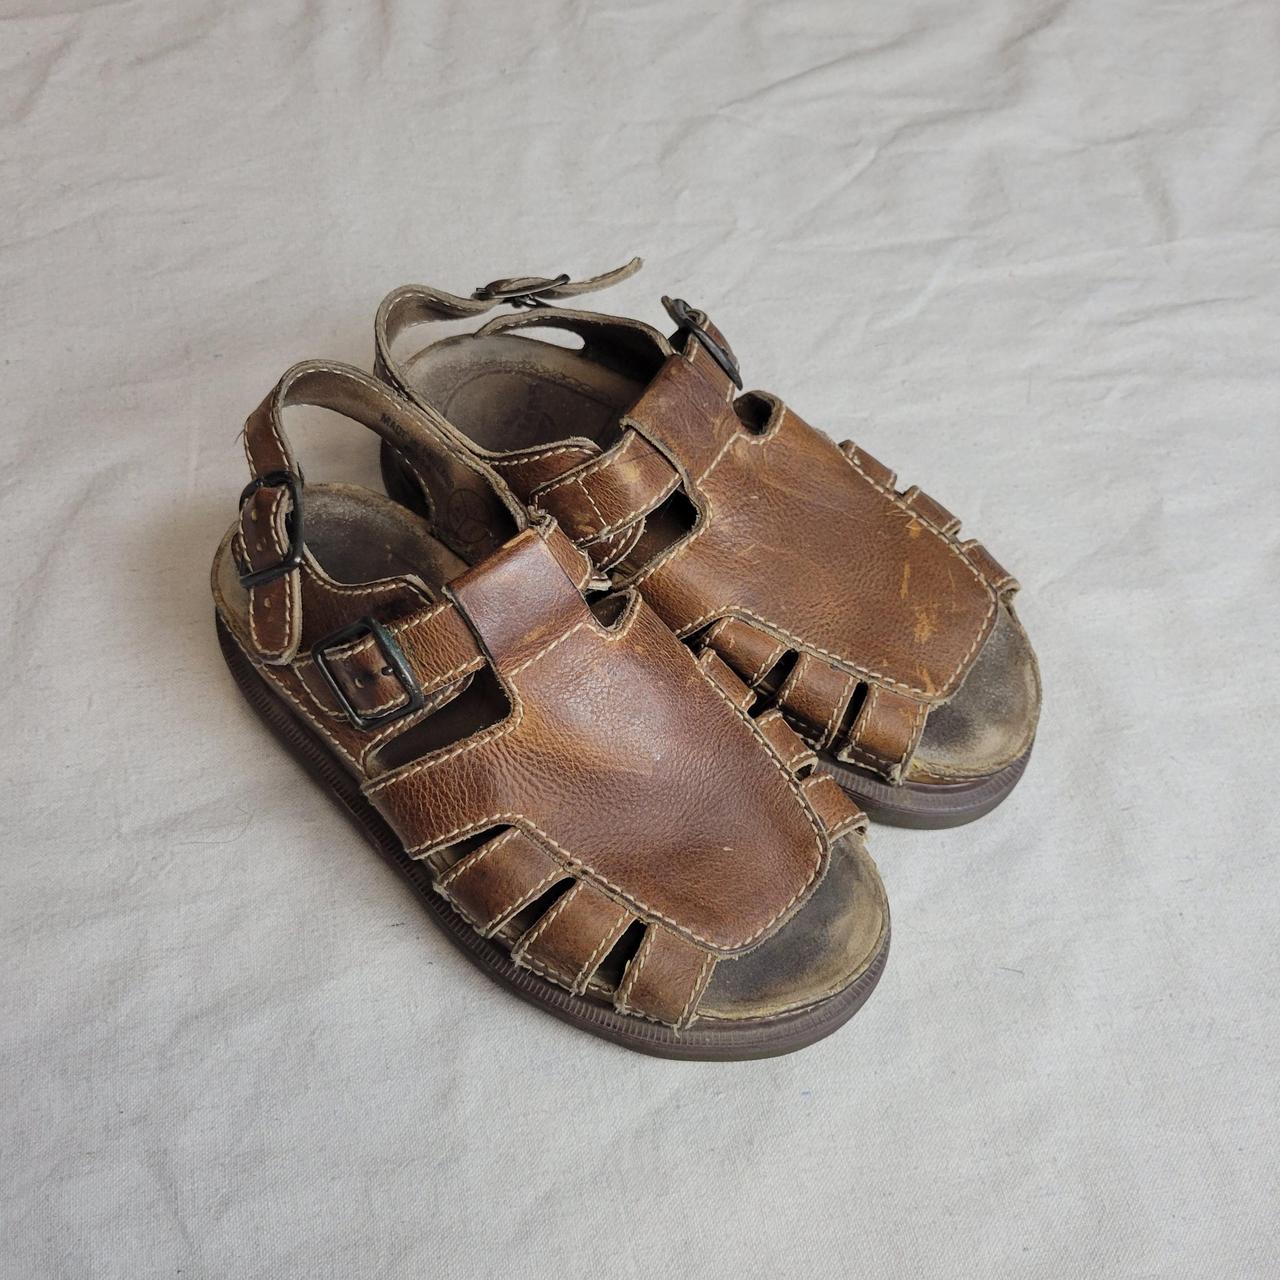 Vintage 90s Dr. Martens fisherman sandals. Brown... - Depop